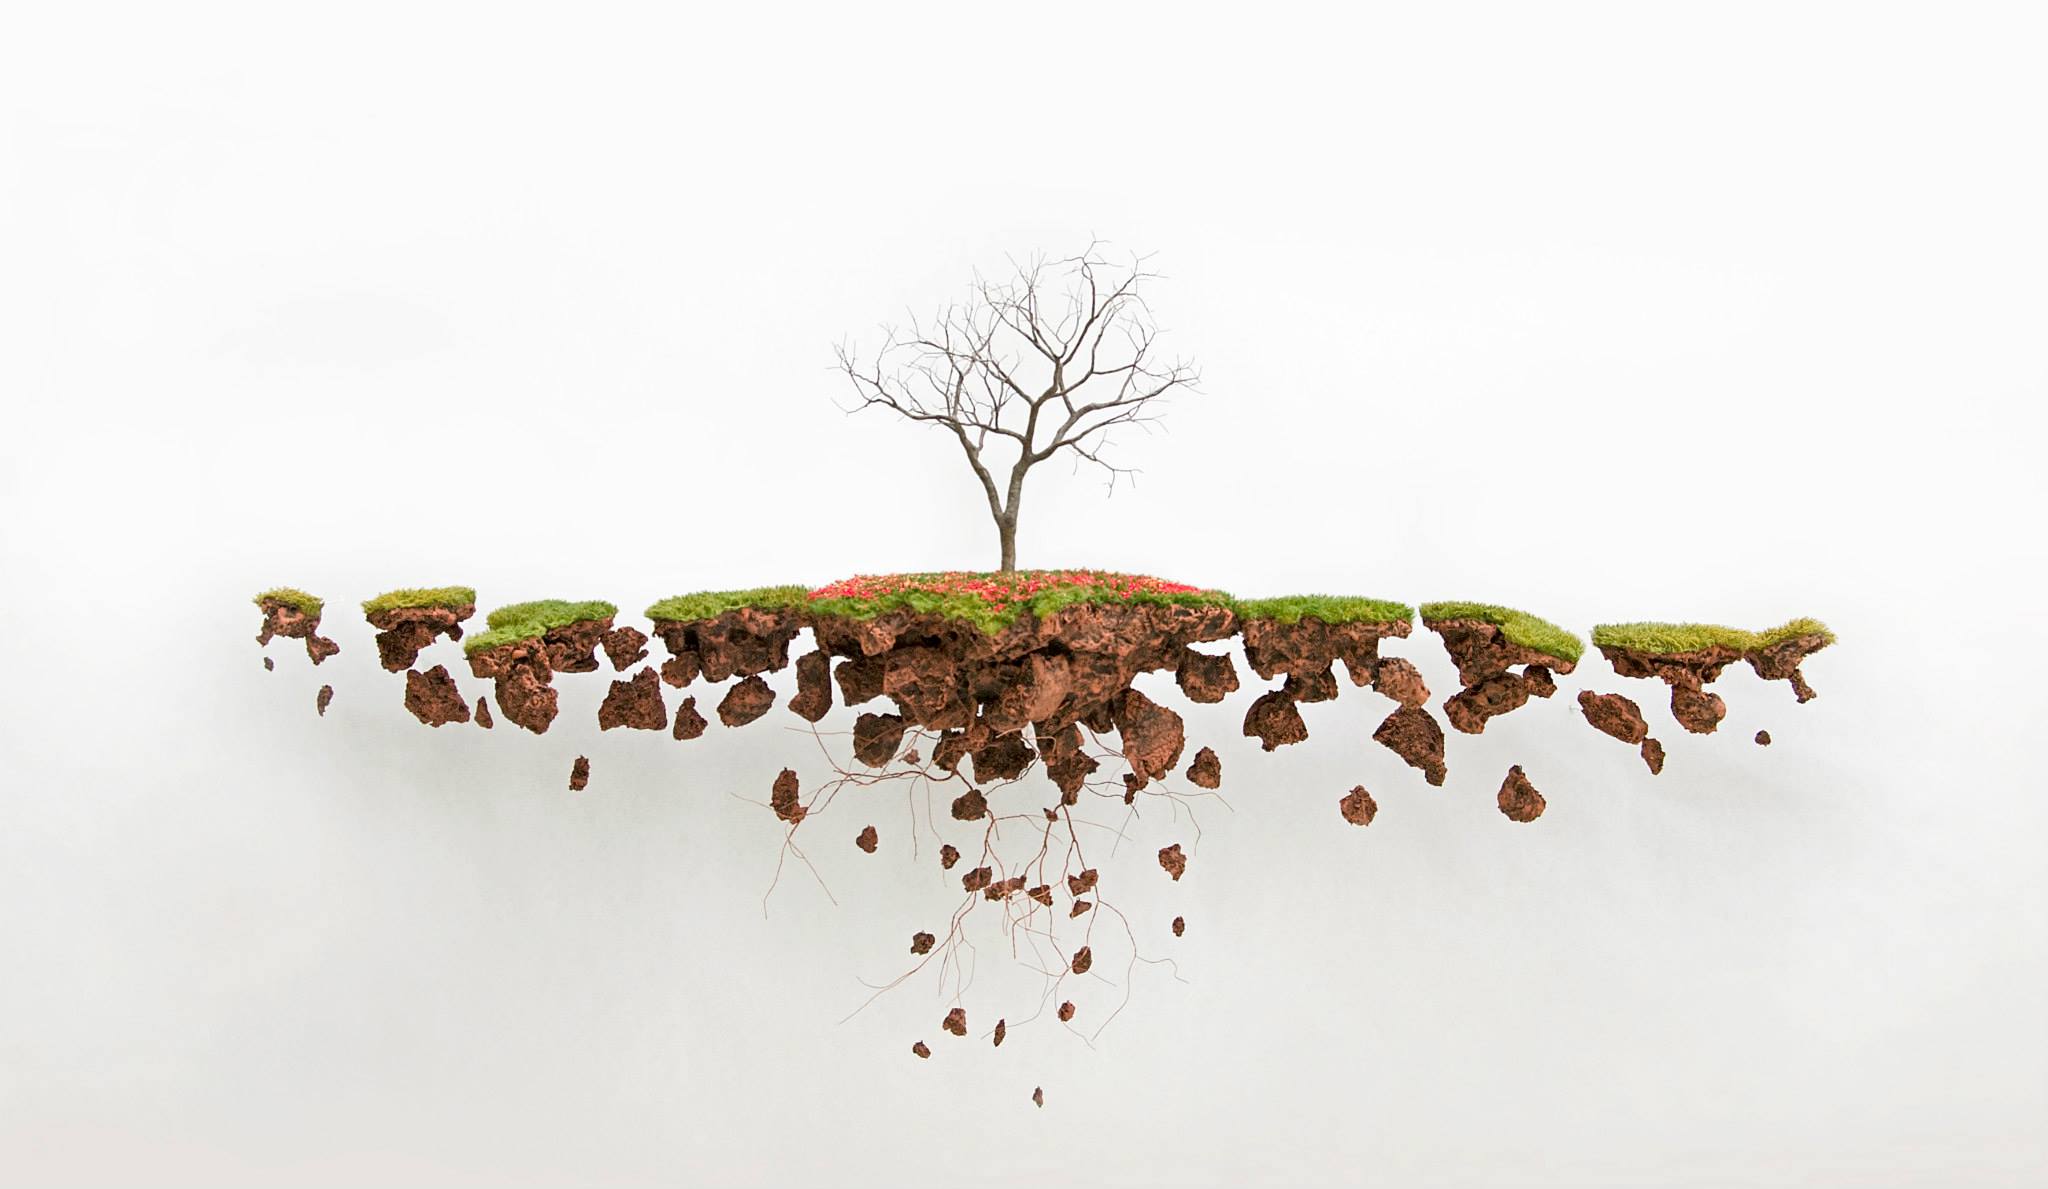 Хорхе Майет: скульптуры деревьев с обнажёнными корнями как метафора утрачен...